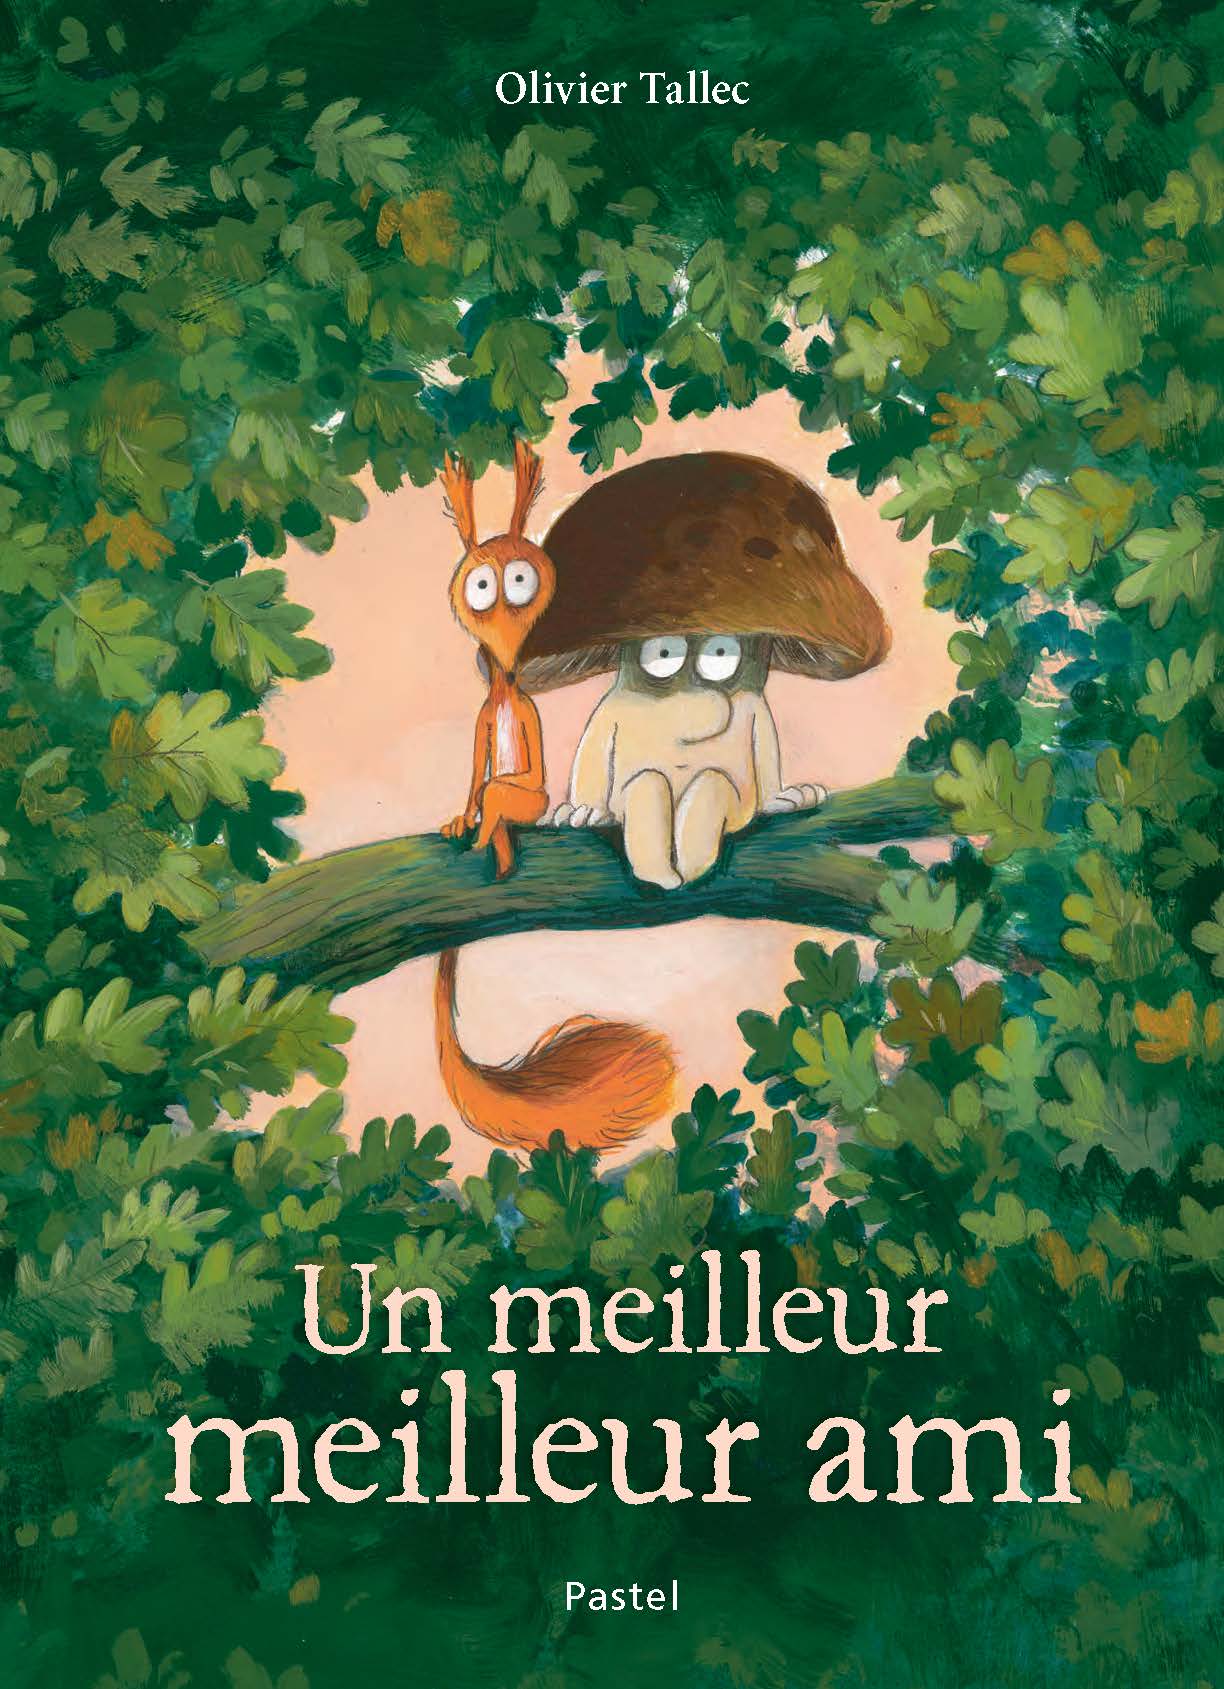 Mon grand cahier d'artiste : Spécial pastel - Mila Éditions